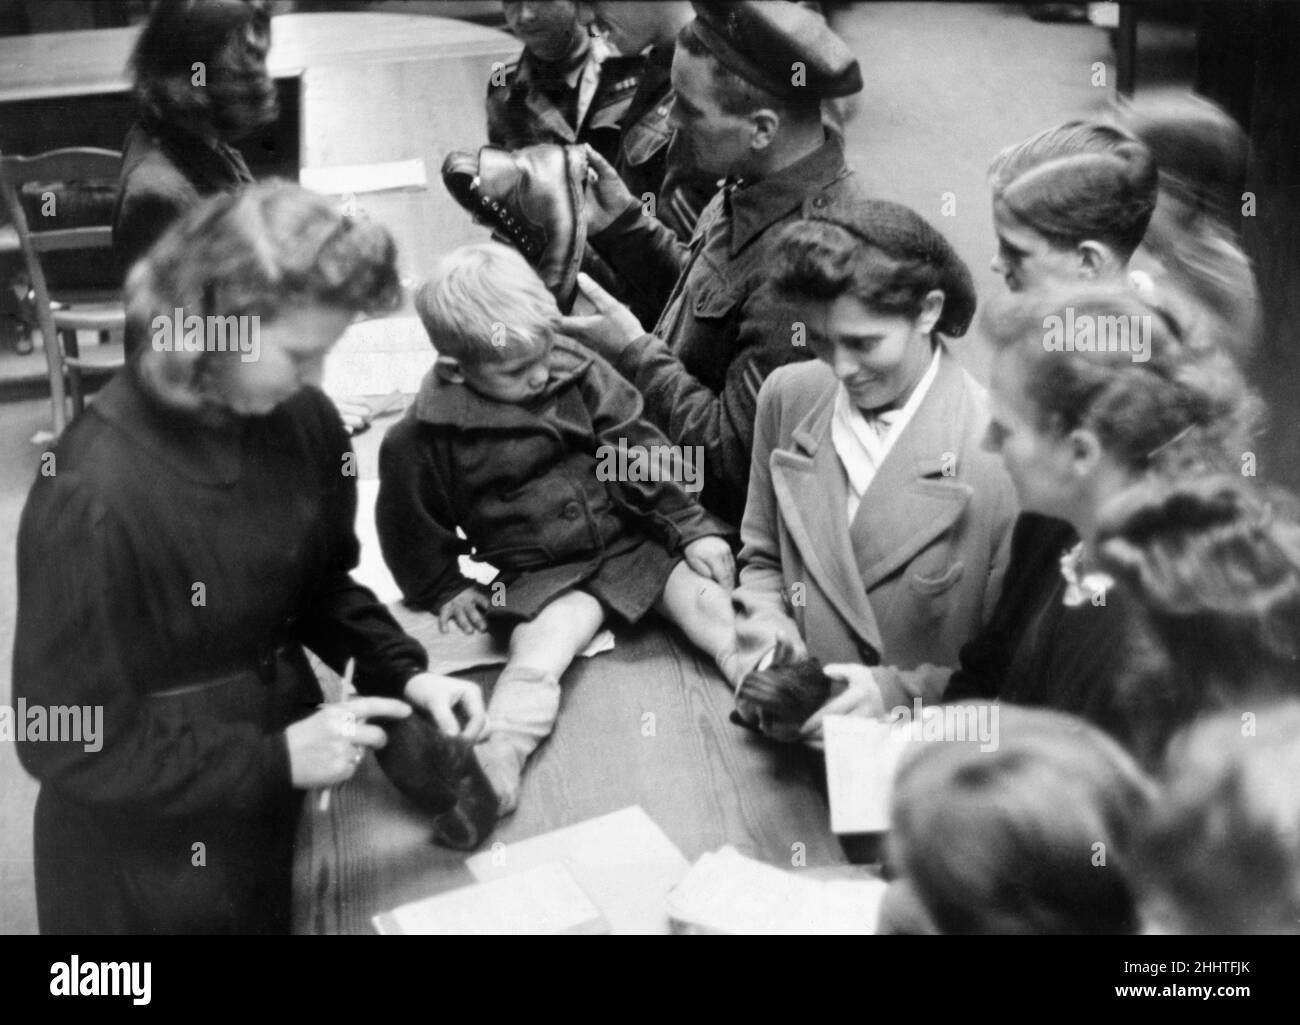 Un intercambio de trueques en Luneburg, Alemania después de la Segunda  Guerra Mundial. Después de la guerra había escasez de necesidades vitales  como alimentos, ropa y productos básicos de uso diario, como